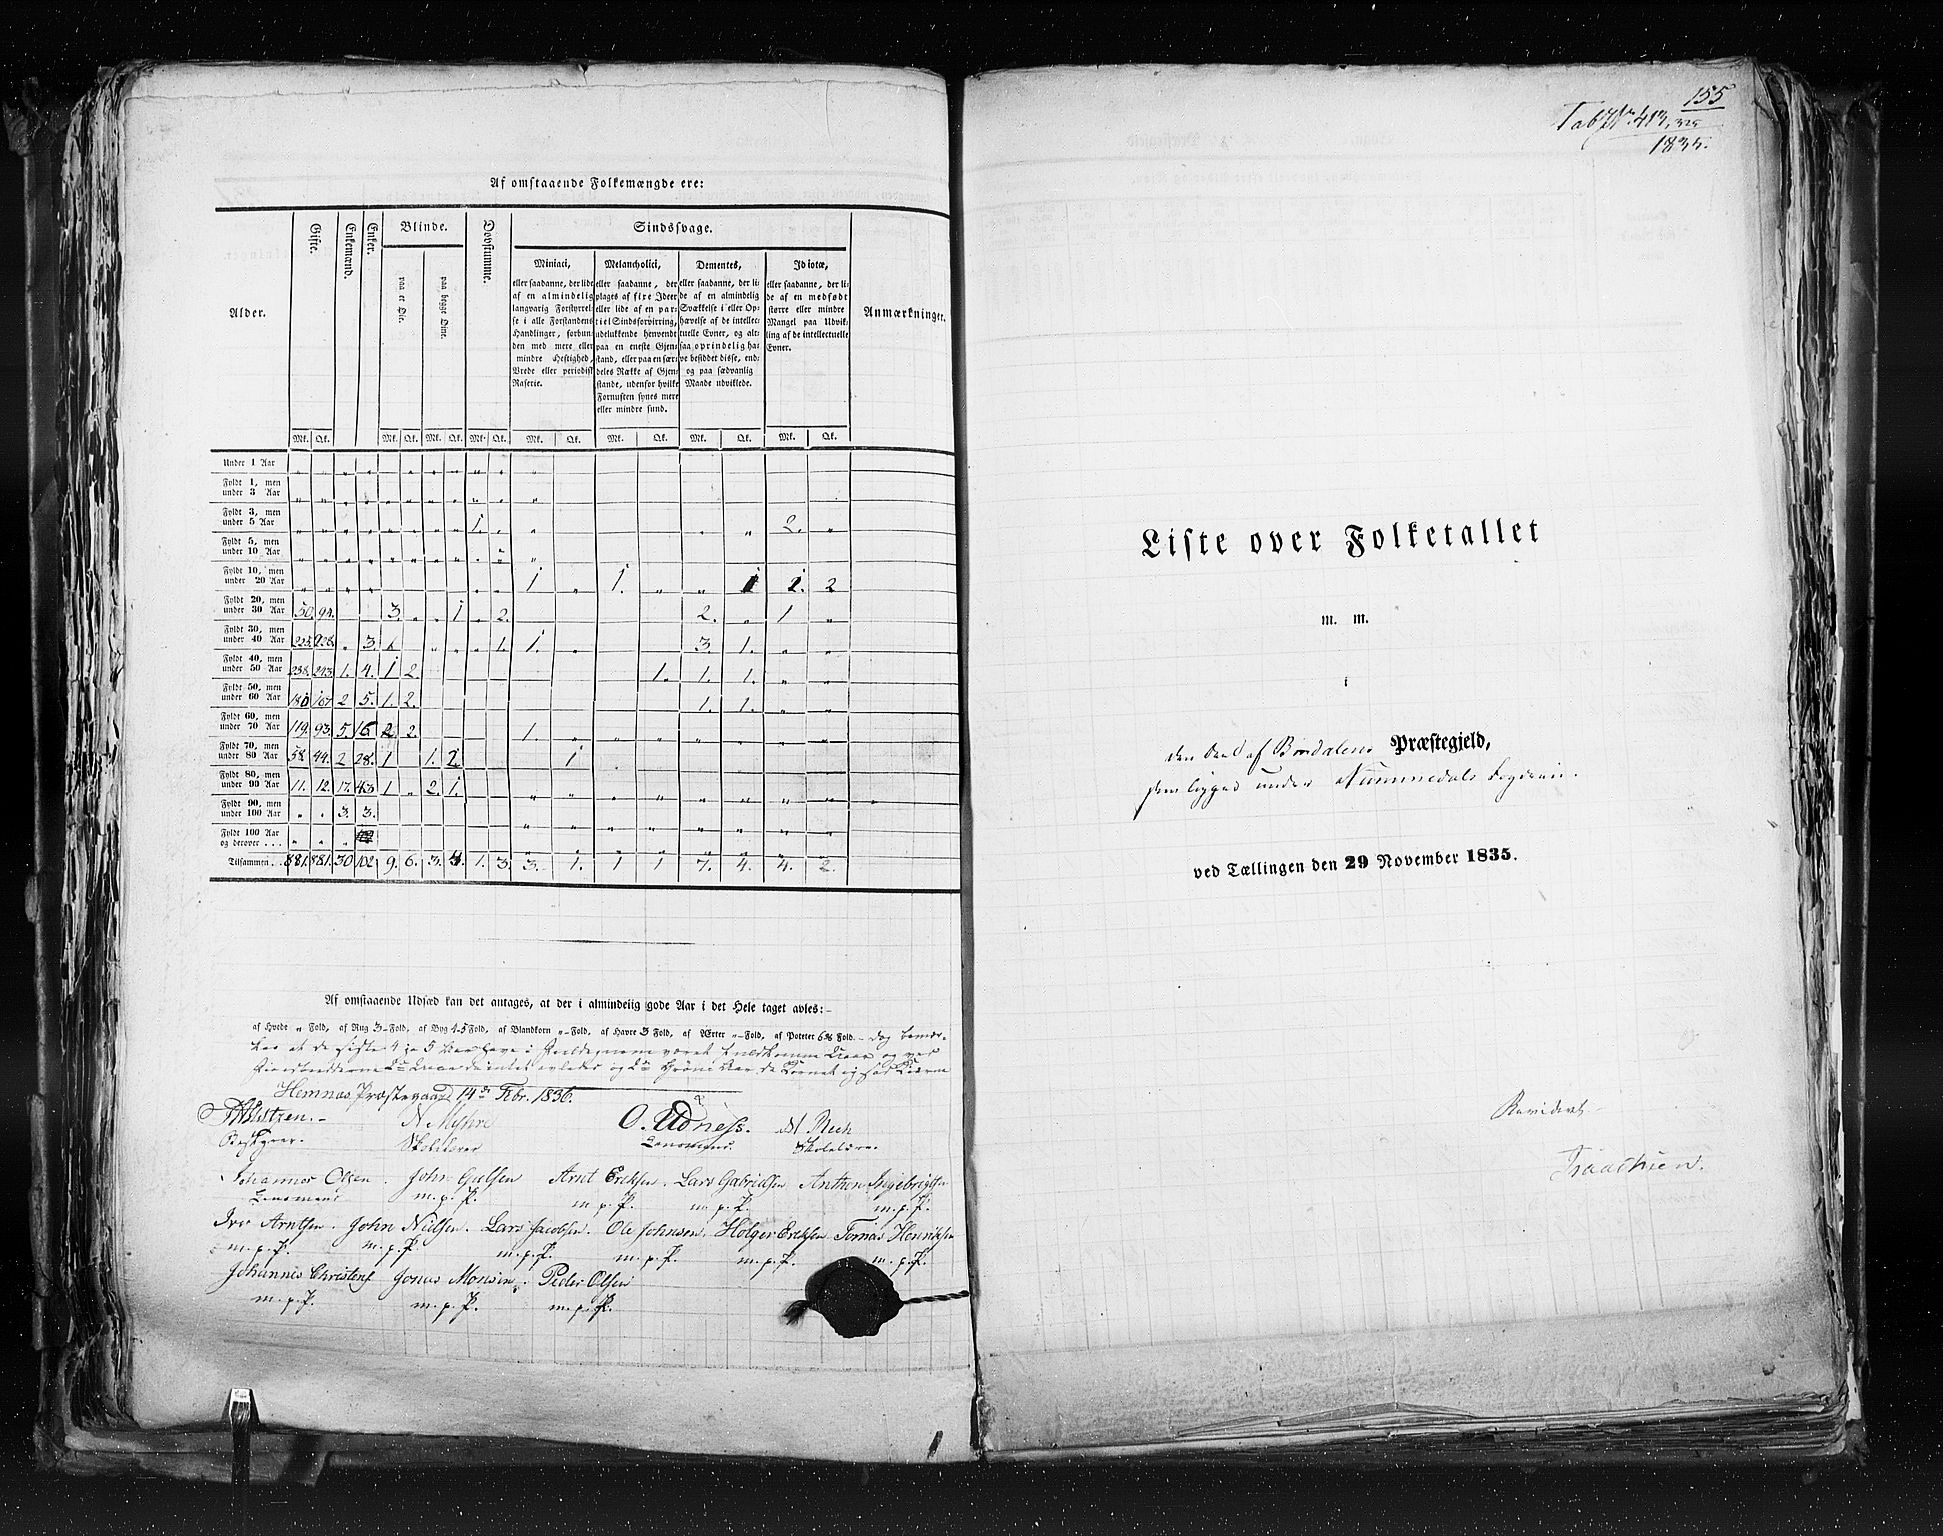 RA, Folketellingen 1835, bind 9: Nordre Trondhjem amt, Nordland amt og Finnmarken amt, 1835, s. 155